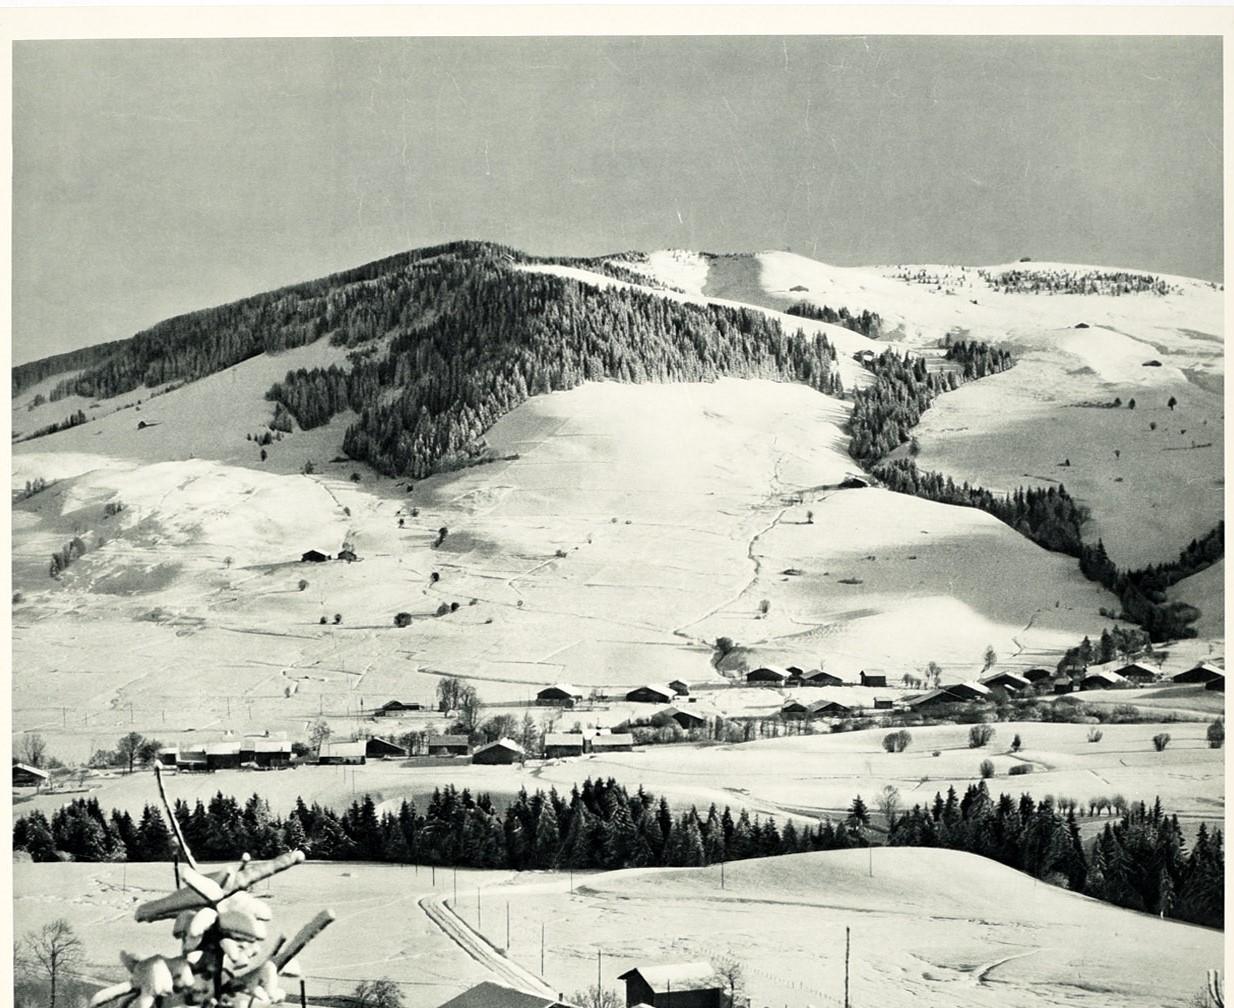 Original-Skireiseplakat für Frankreich - Megeve Haute Savoie - mit einer malerischen Schwarz-Weiß-Ansicht von schneebedeckten Bäumen und Dächern im Dorf vor den Bergen mit dem fetten Titeltext darunter. Das beliebte Skidorf Megeve liegt in den